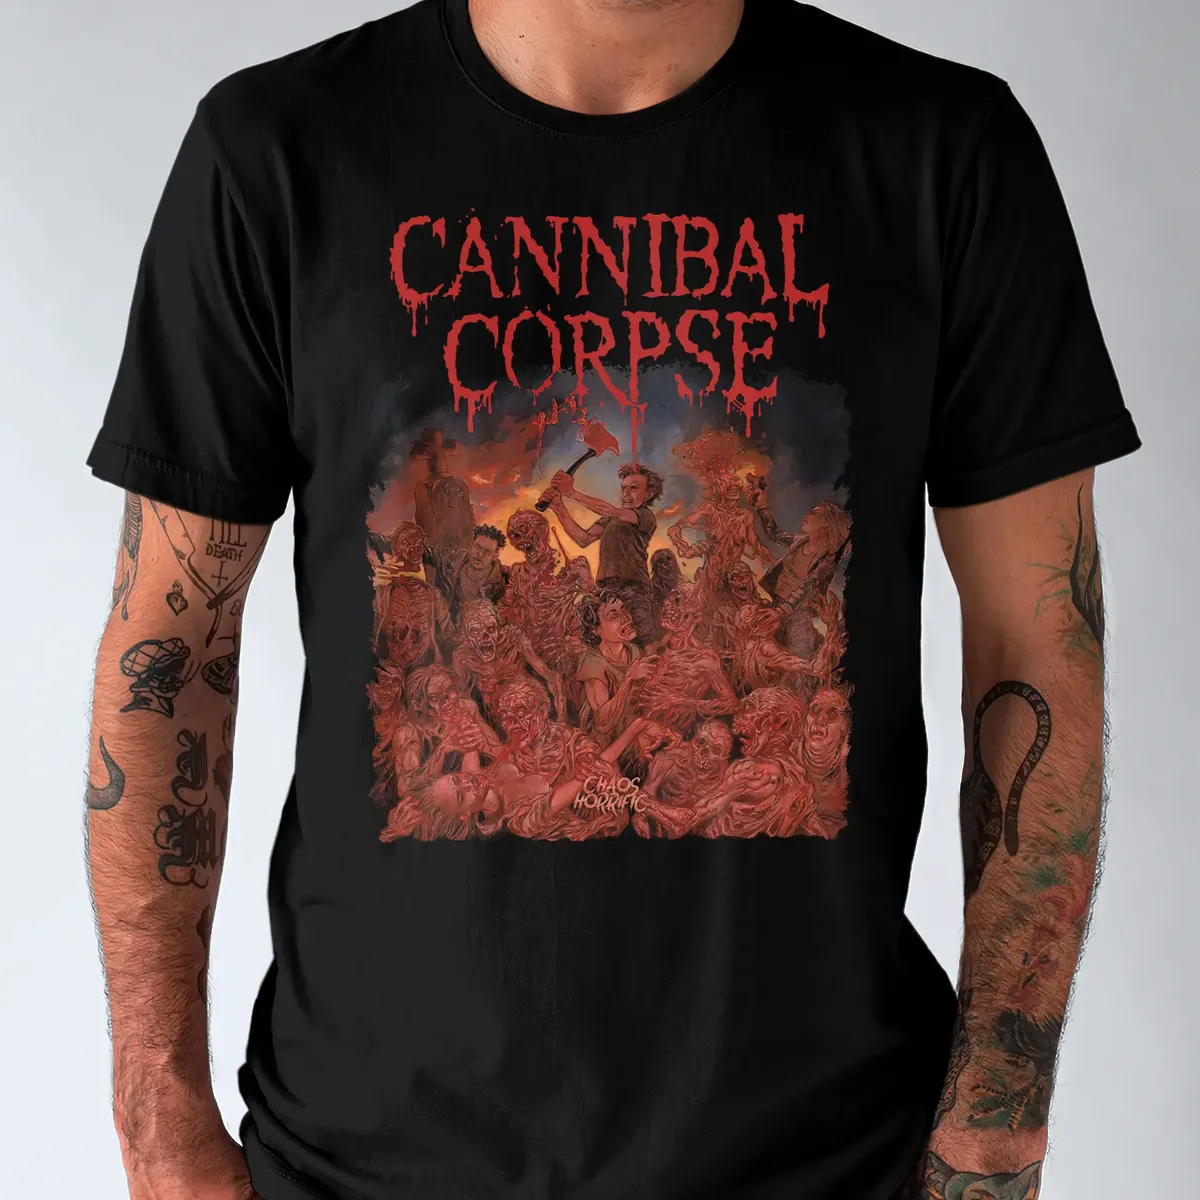 Nome do produto: Camiseta Cannibal Corpse Chaos Horrific